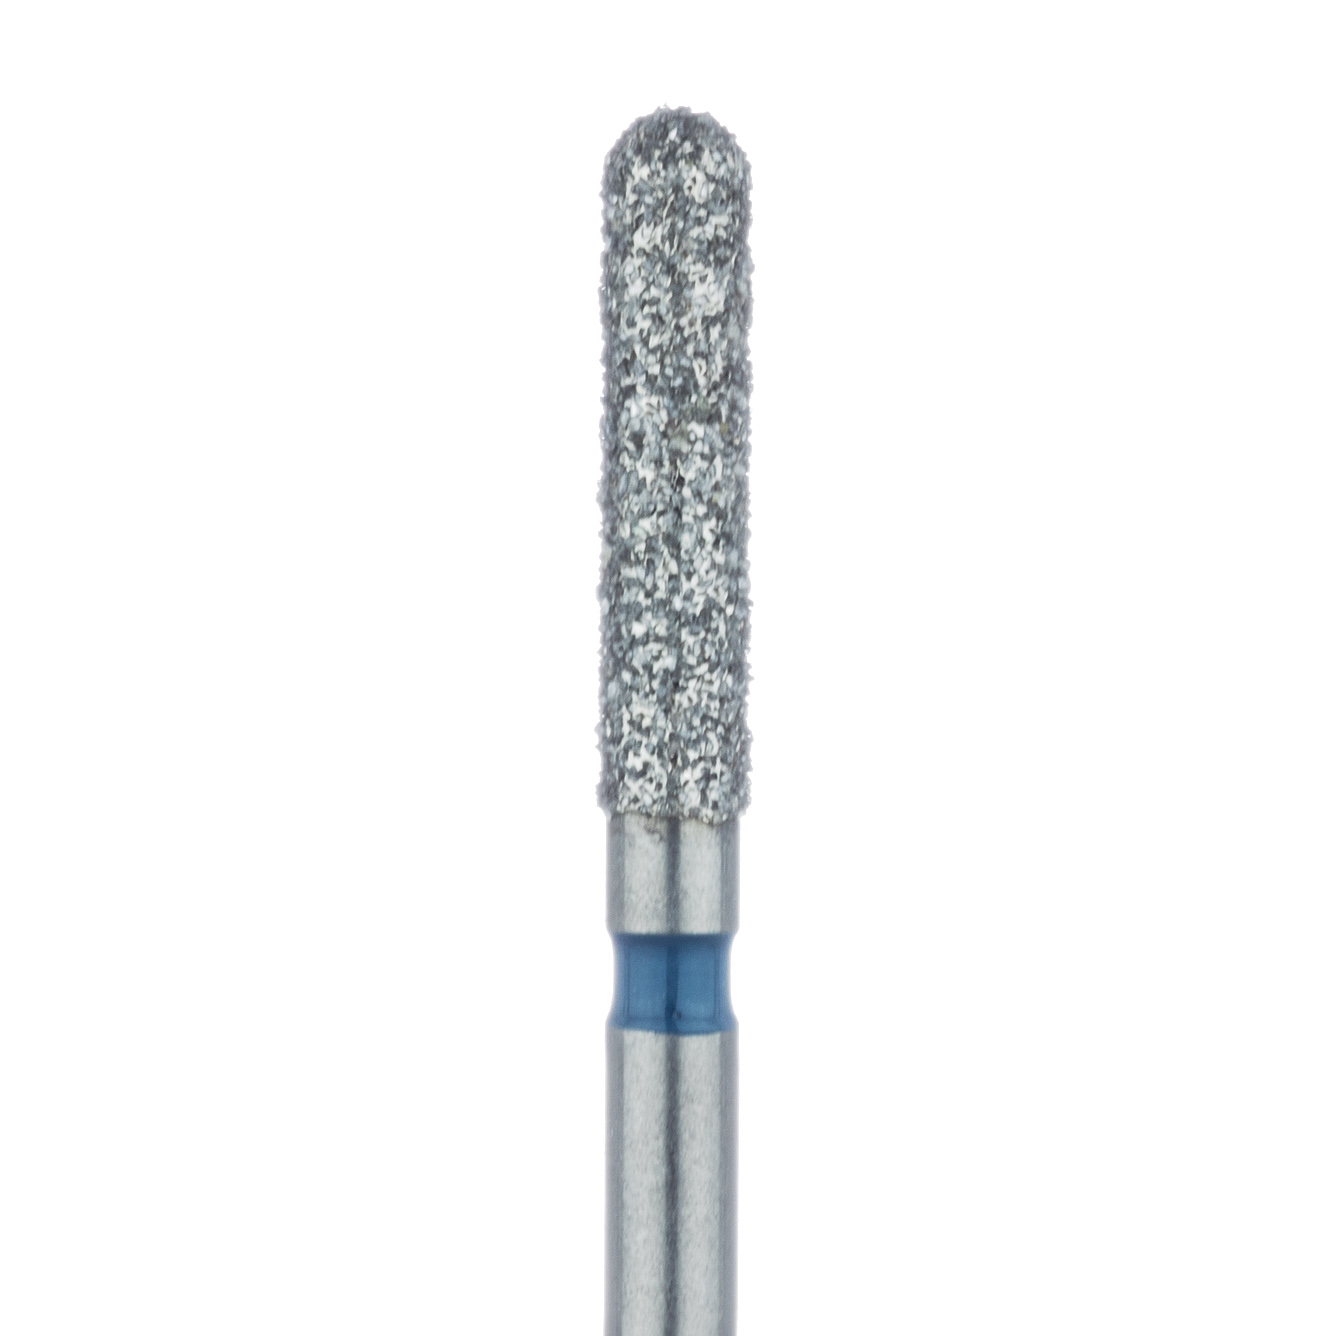 881-018-FG Round End Cylinder Diamond Bur, 1.8mm Ø, Medium, FG